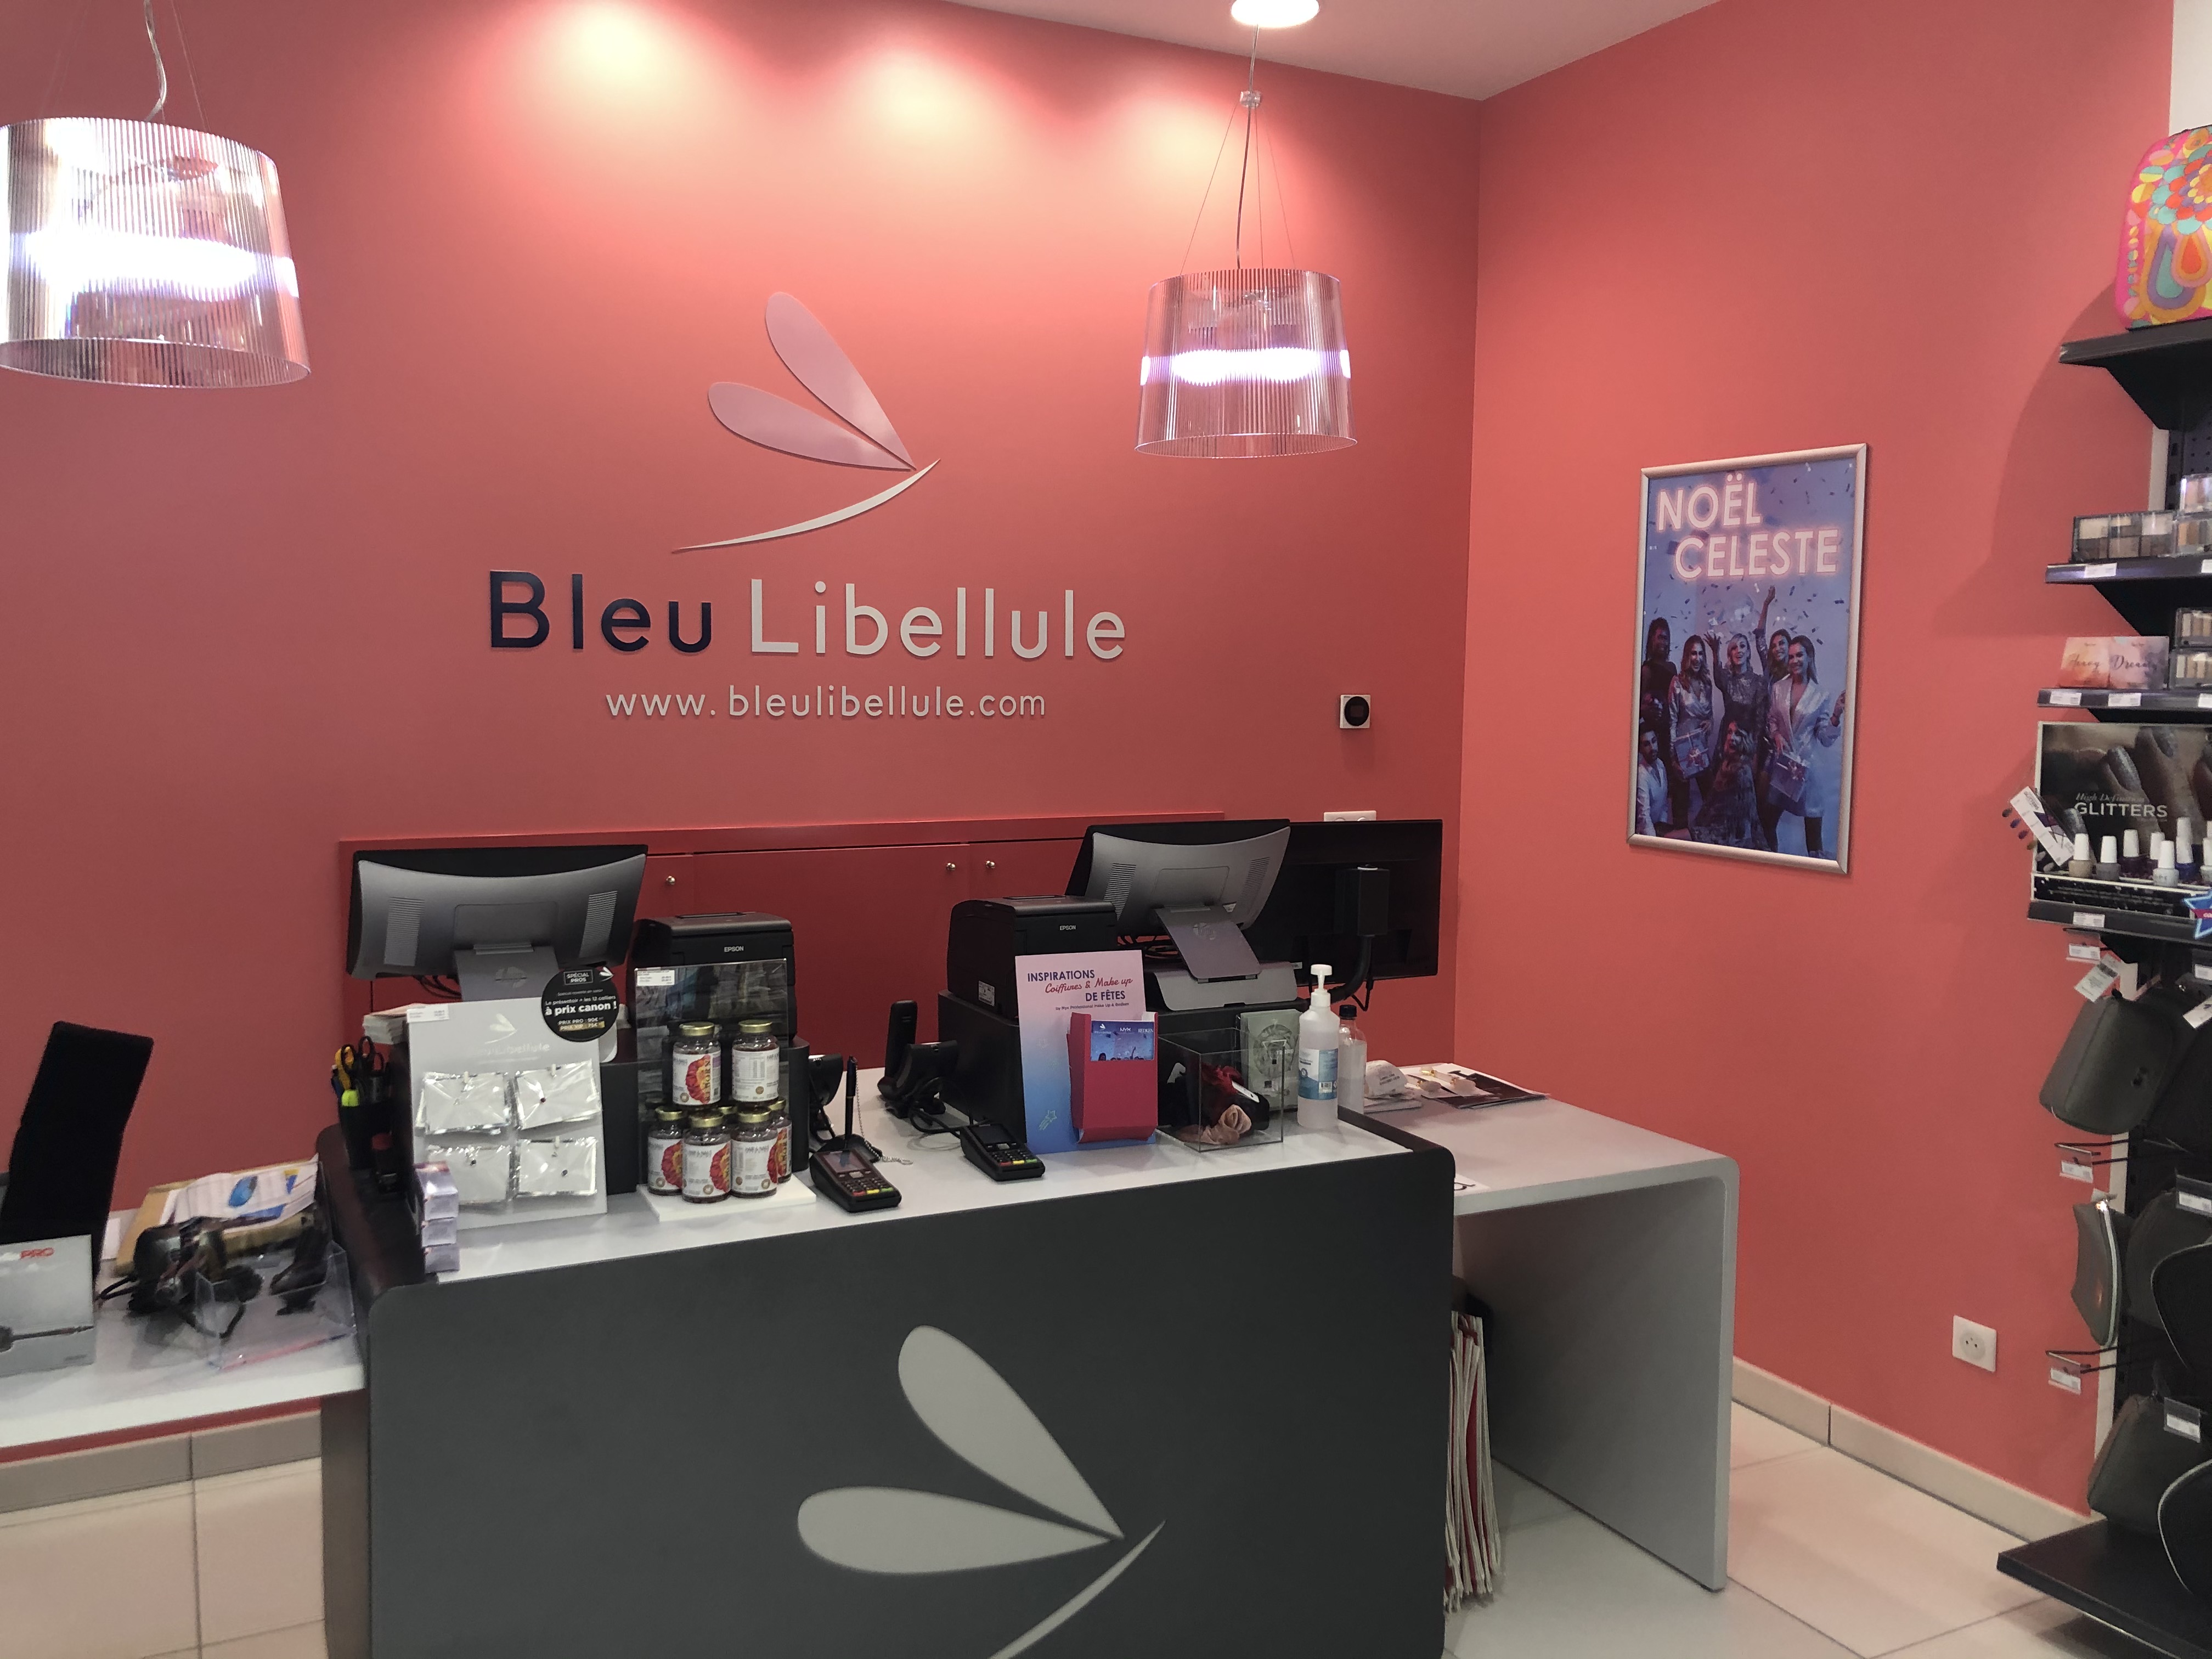 Carrousel Boutique Bleu Libellule Pau